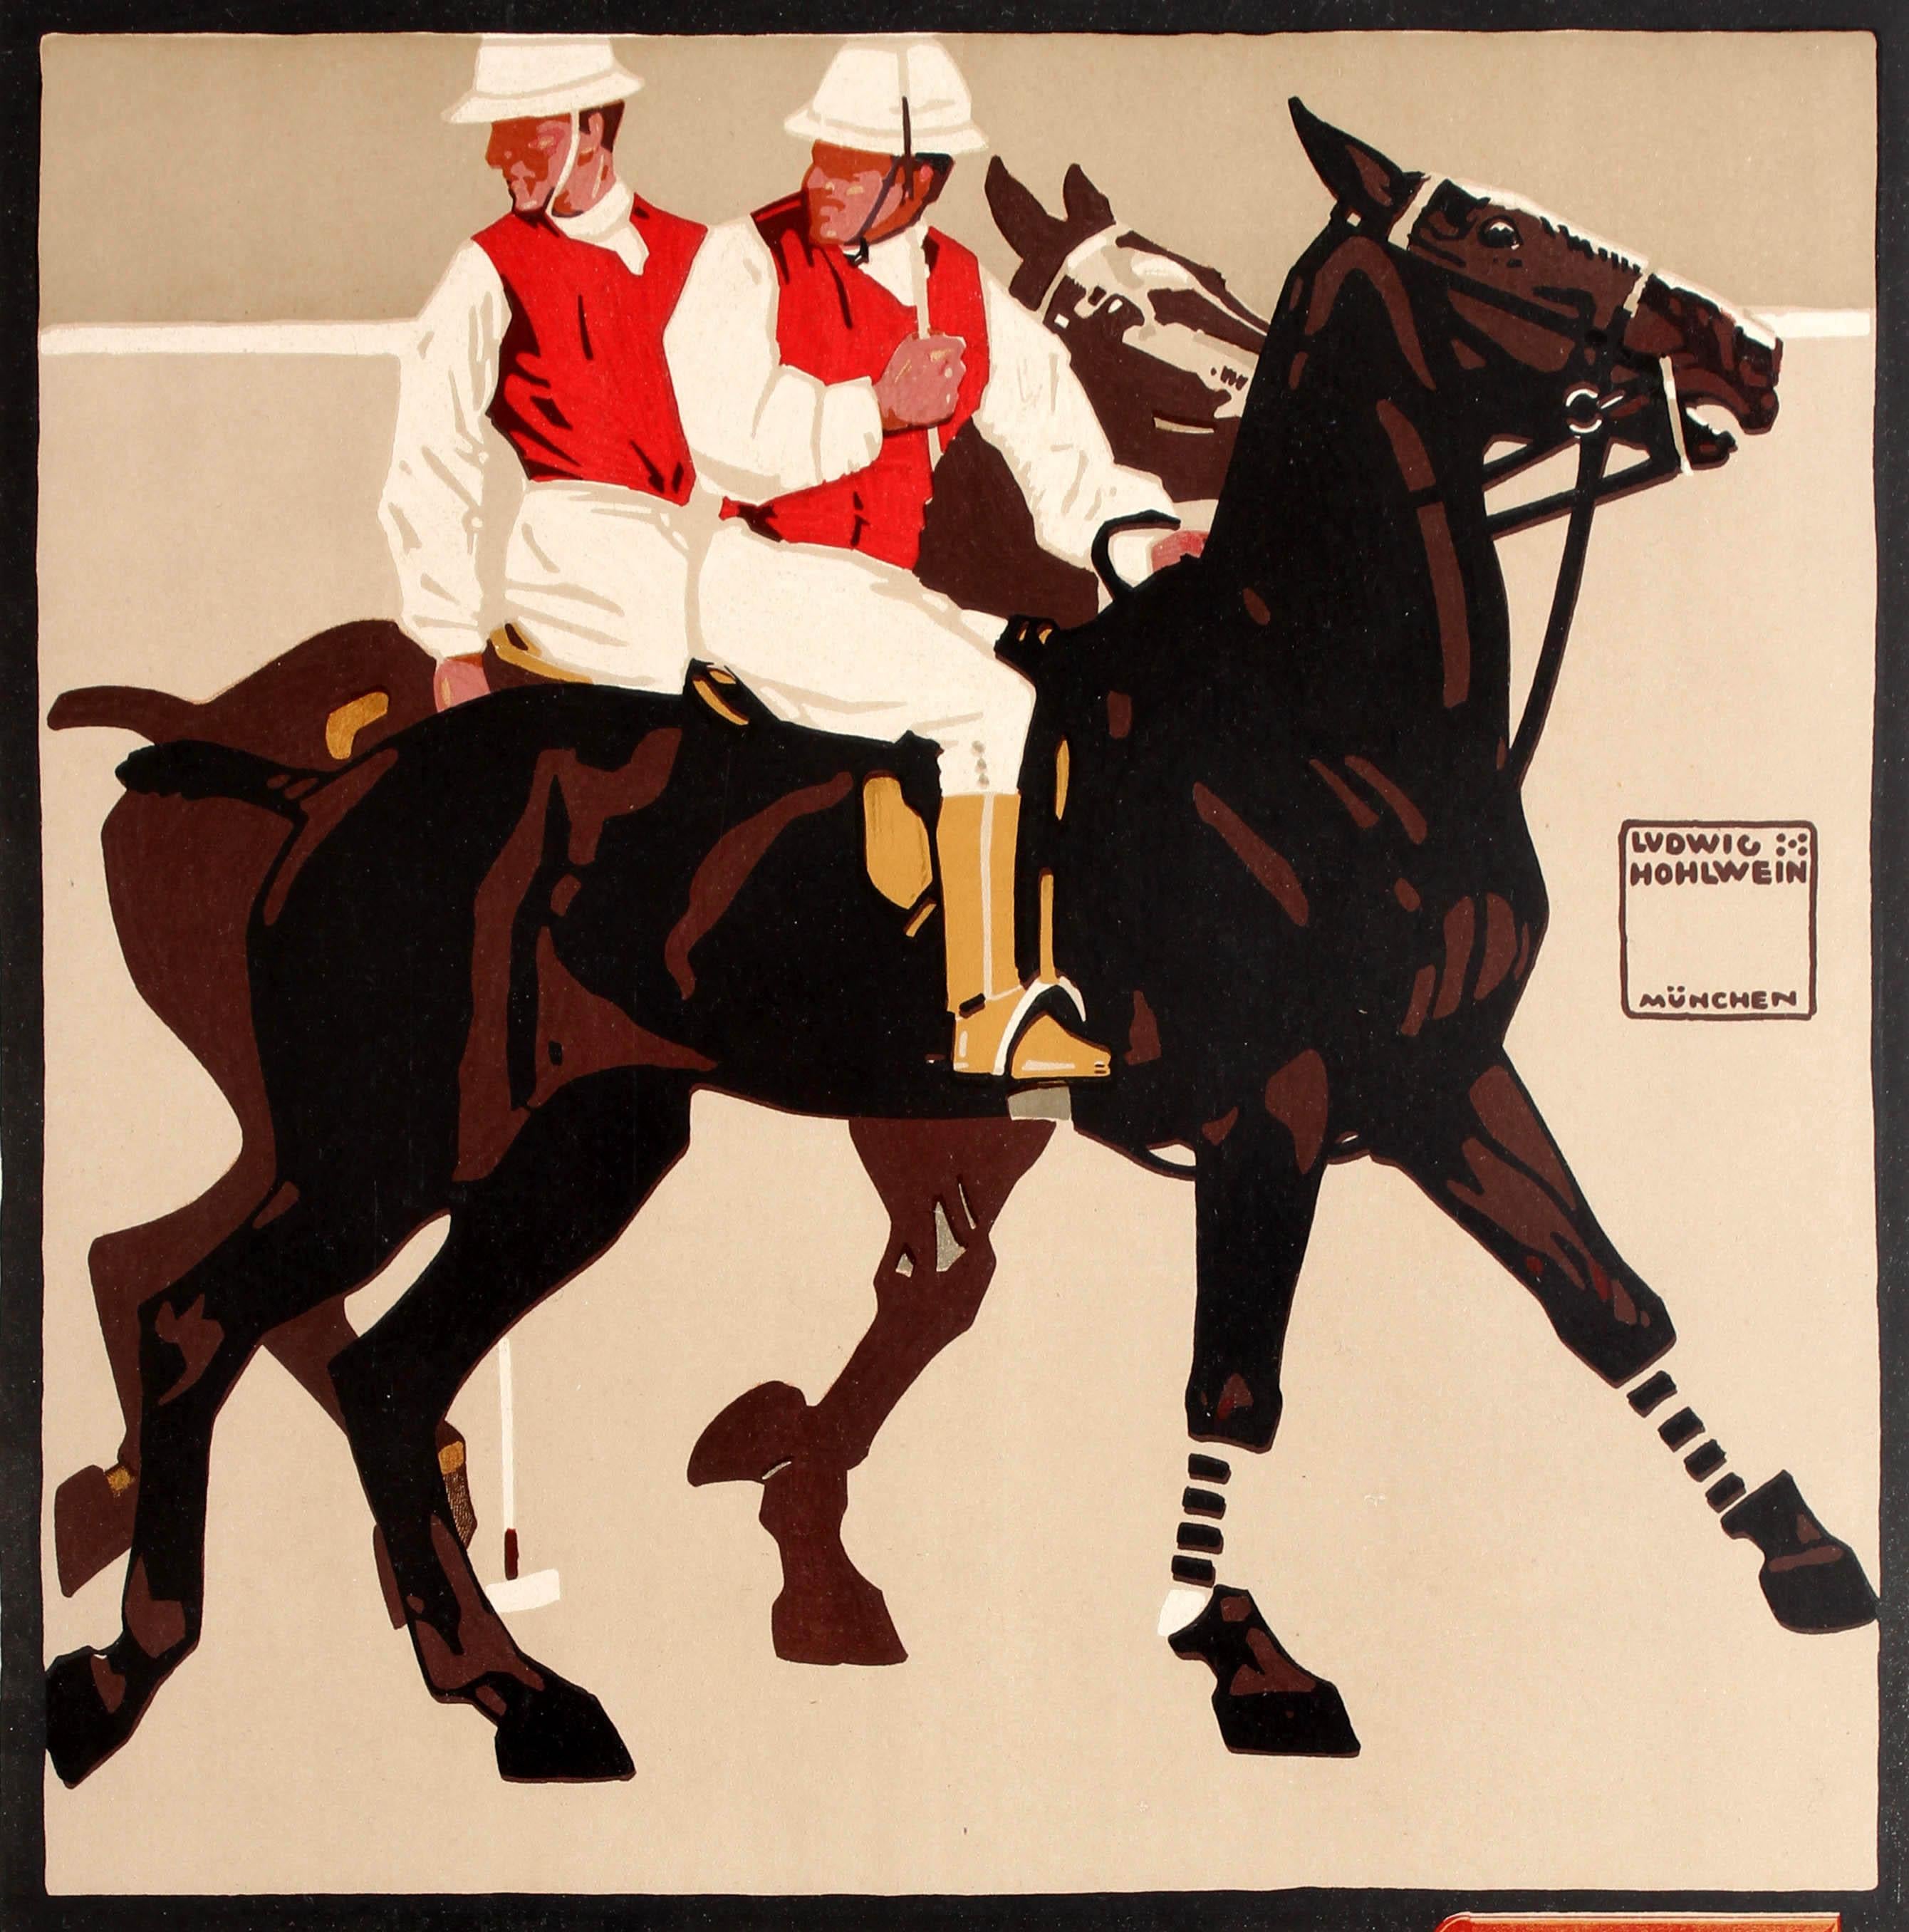 Affiche publicitaire ancienne originale pour Le livre d'or des sports ou Das Goldene Buch Des Sports par le célèbre graphiste allemand Ludwig Hohlwein (1874-1949) présentant une superbe image de deux joueurs de polo sur leurs chevaux avec le texte